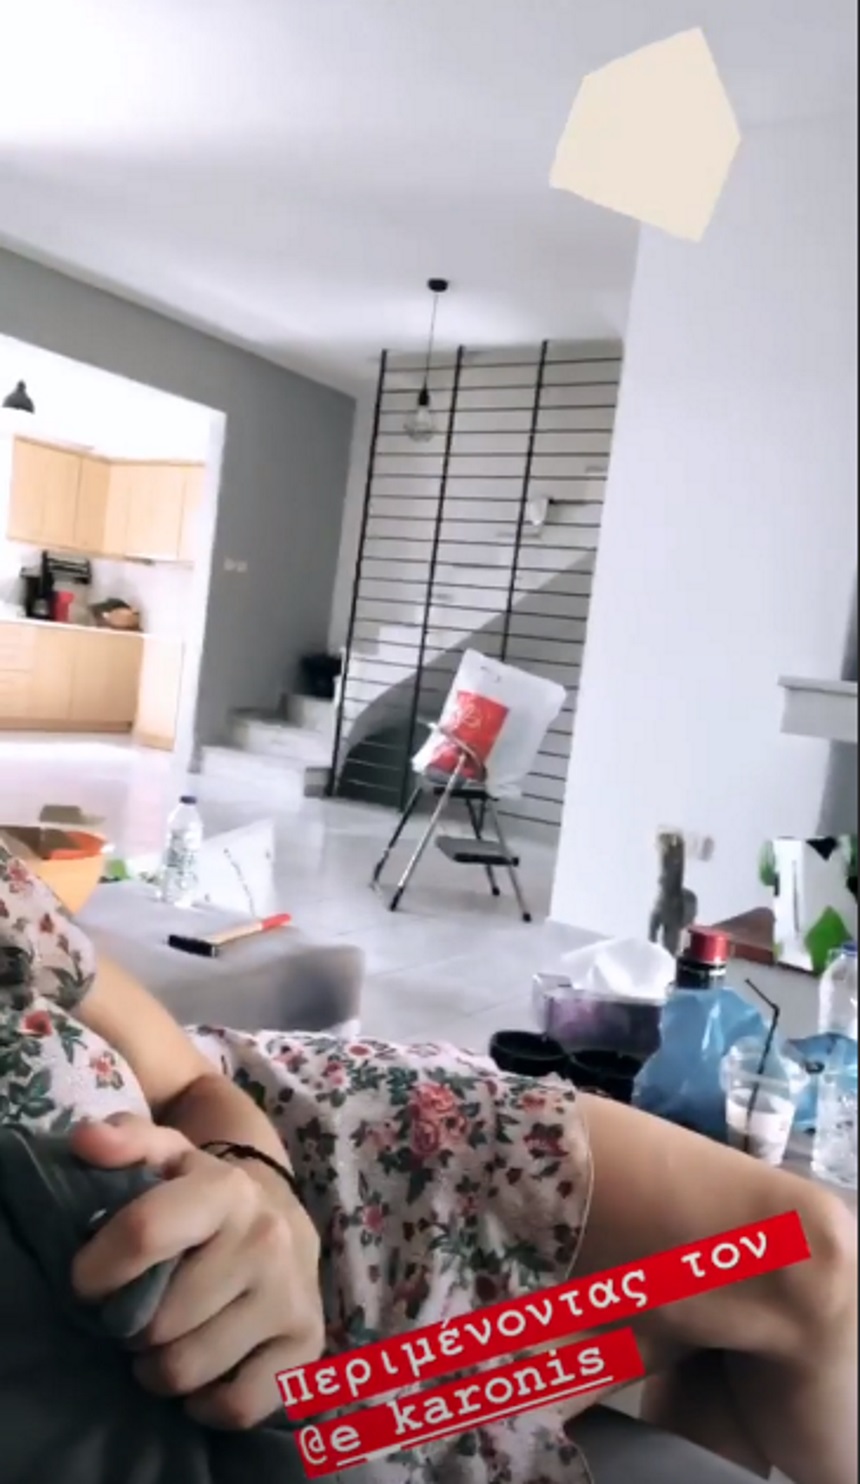 Μπάγια Αντωνοπούλου: Μας δείχνει τα δωμάτια του νέου σπιτιού της (εικόνες,βίντεο)